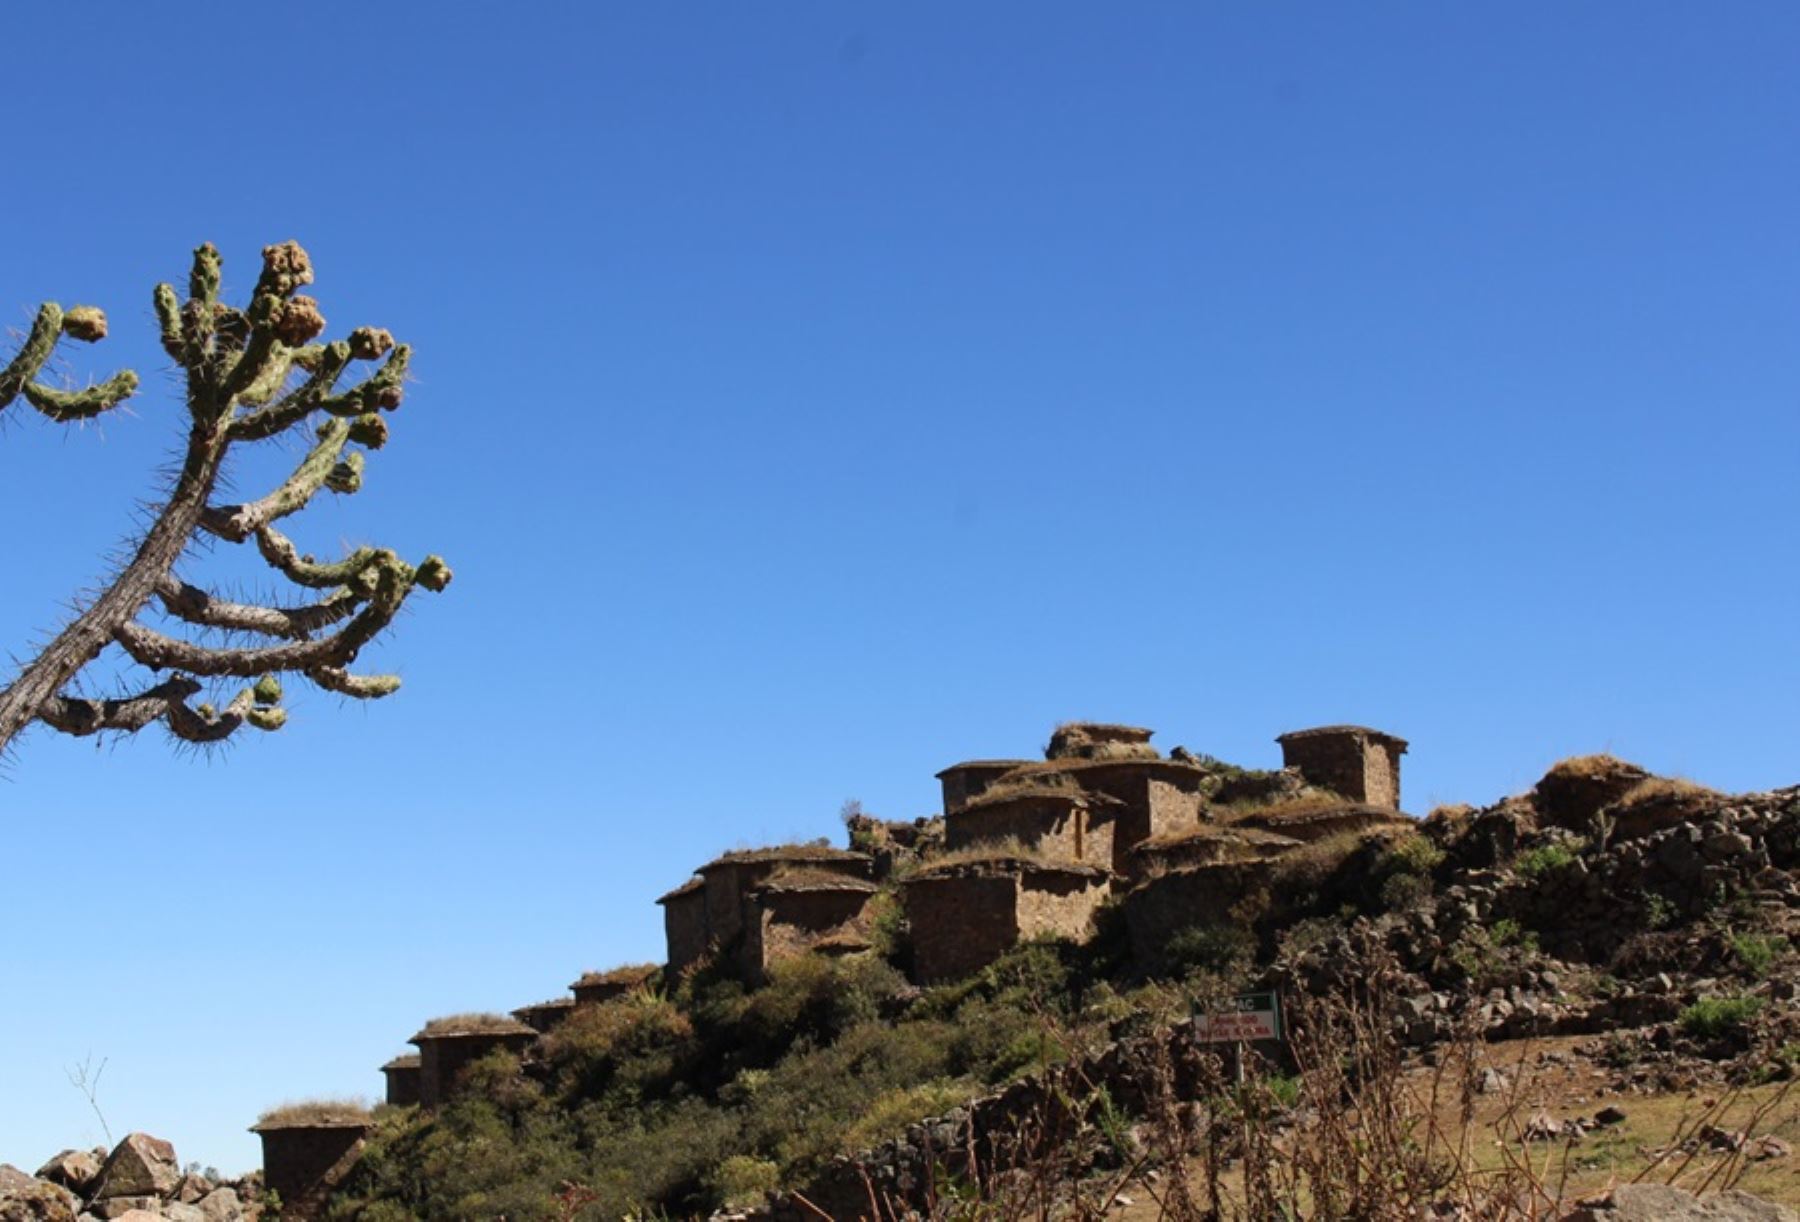 El sitio arqueológico Rúpak se localiza a 3,580 metros sobre el nivel del mar, en la cima de una montaña que forma parte de la comunidad campesina de San Salvador de Pampas que pertenece al distrito de Atavillos Bajo, en la sierra de la provincia de Huaral, en el departamento de Lima.